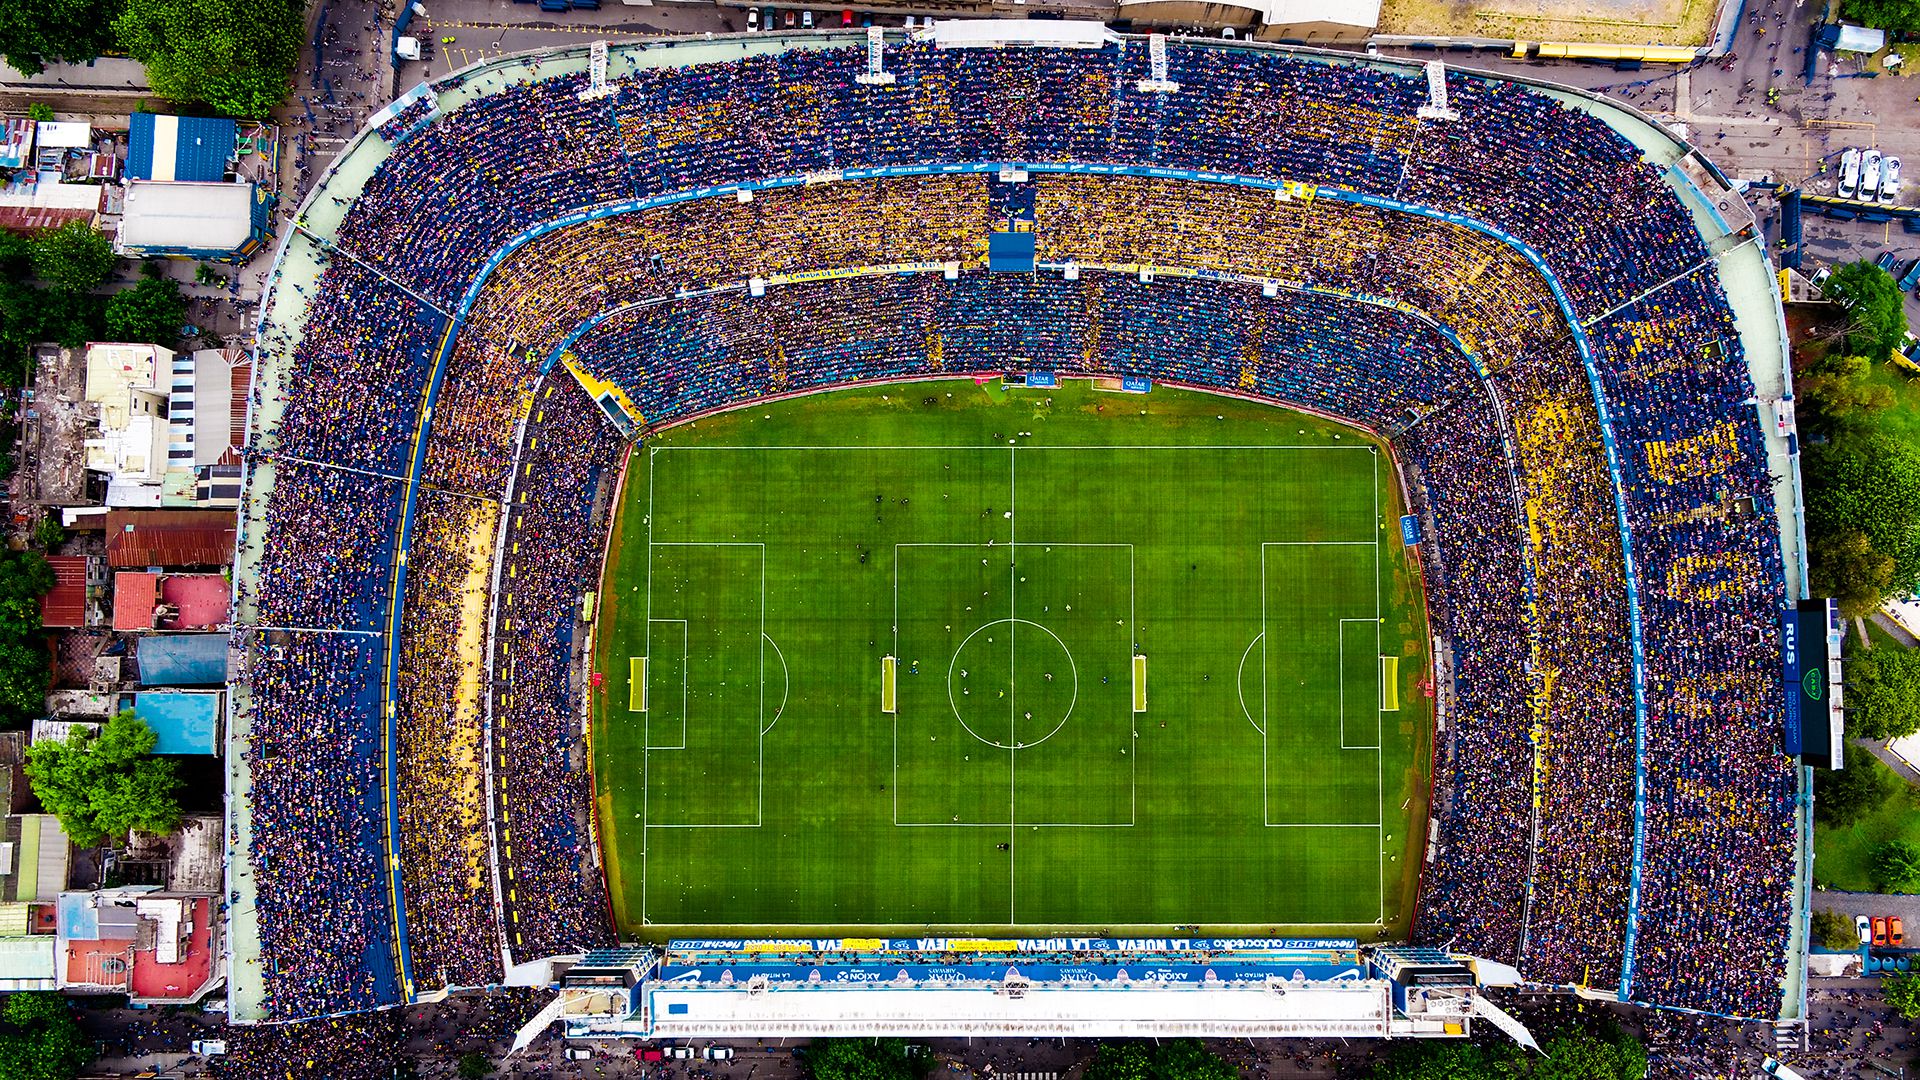 El estadio Alberto J Armando, mejor conocido como "La Bombonera", pertenece al Club Atletico Boca Juniors y fue inaugurado el 25 de mayo en 1940. Actualmente cuenta con una capacidad para más de 49 mil espectadores.